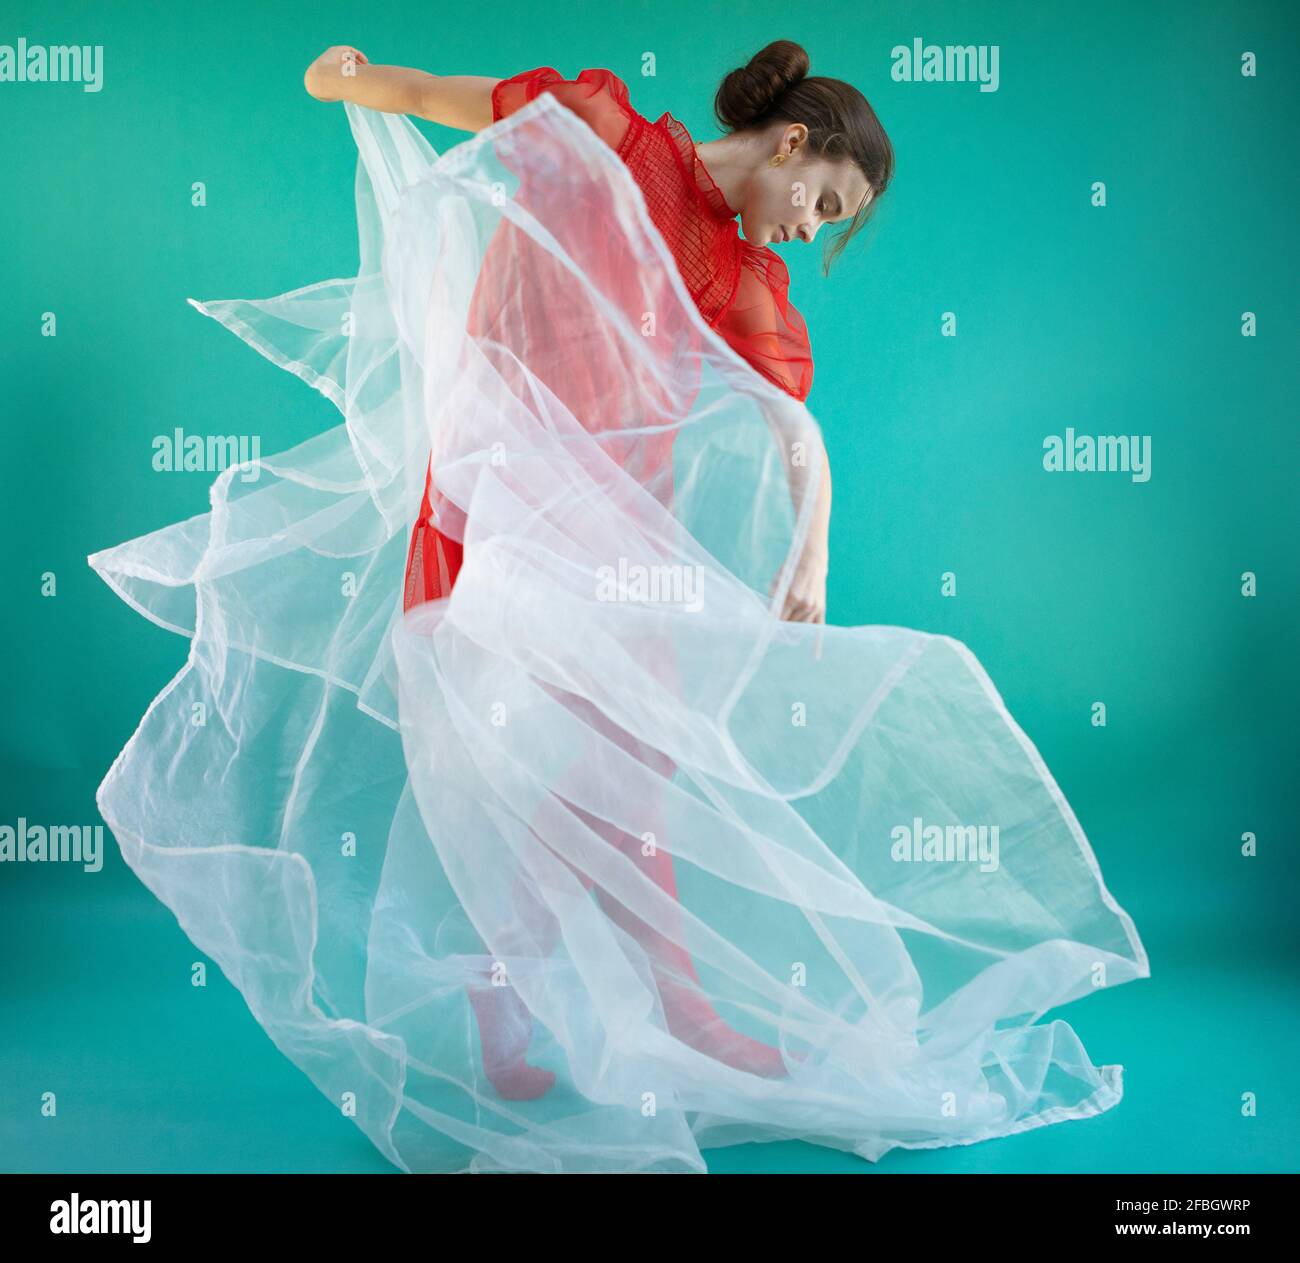 Joven bailarina bailando con tulle blanco sobre fondo turquesa Foto de stock